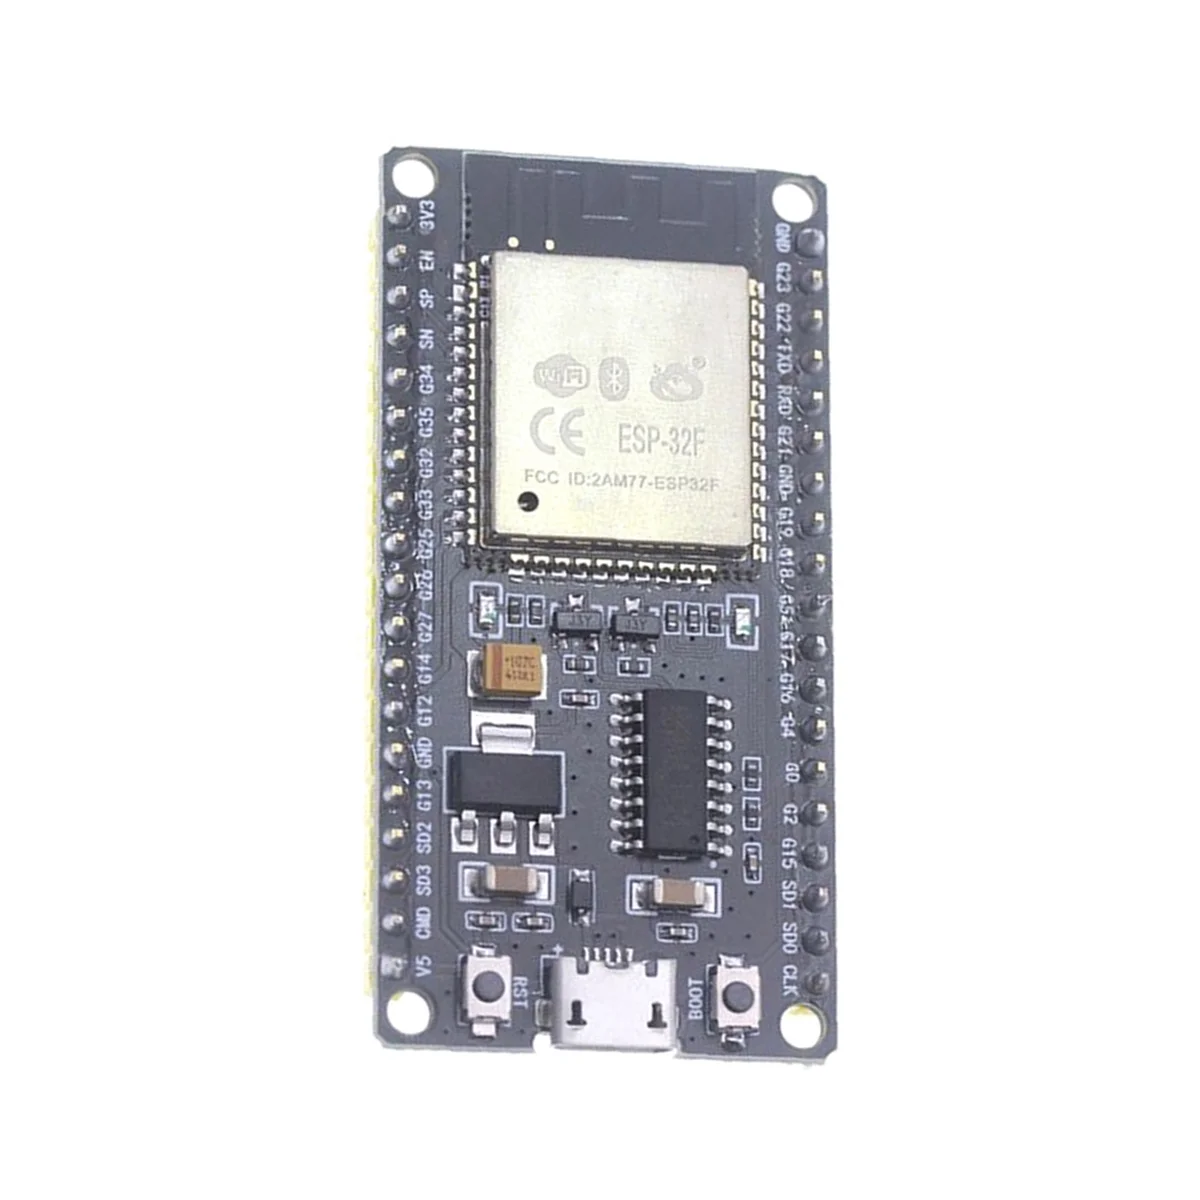 ESP32F modul fejlesztő kártya CH340 illesztőprogram vezeték nélküli WiFi Bluetooth fejlesztőkártya 1,3 hüvelykes színes képernyővel - 2